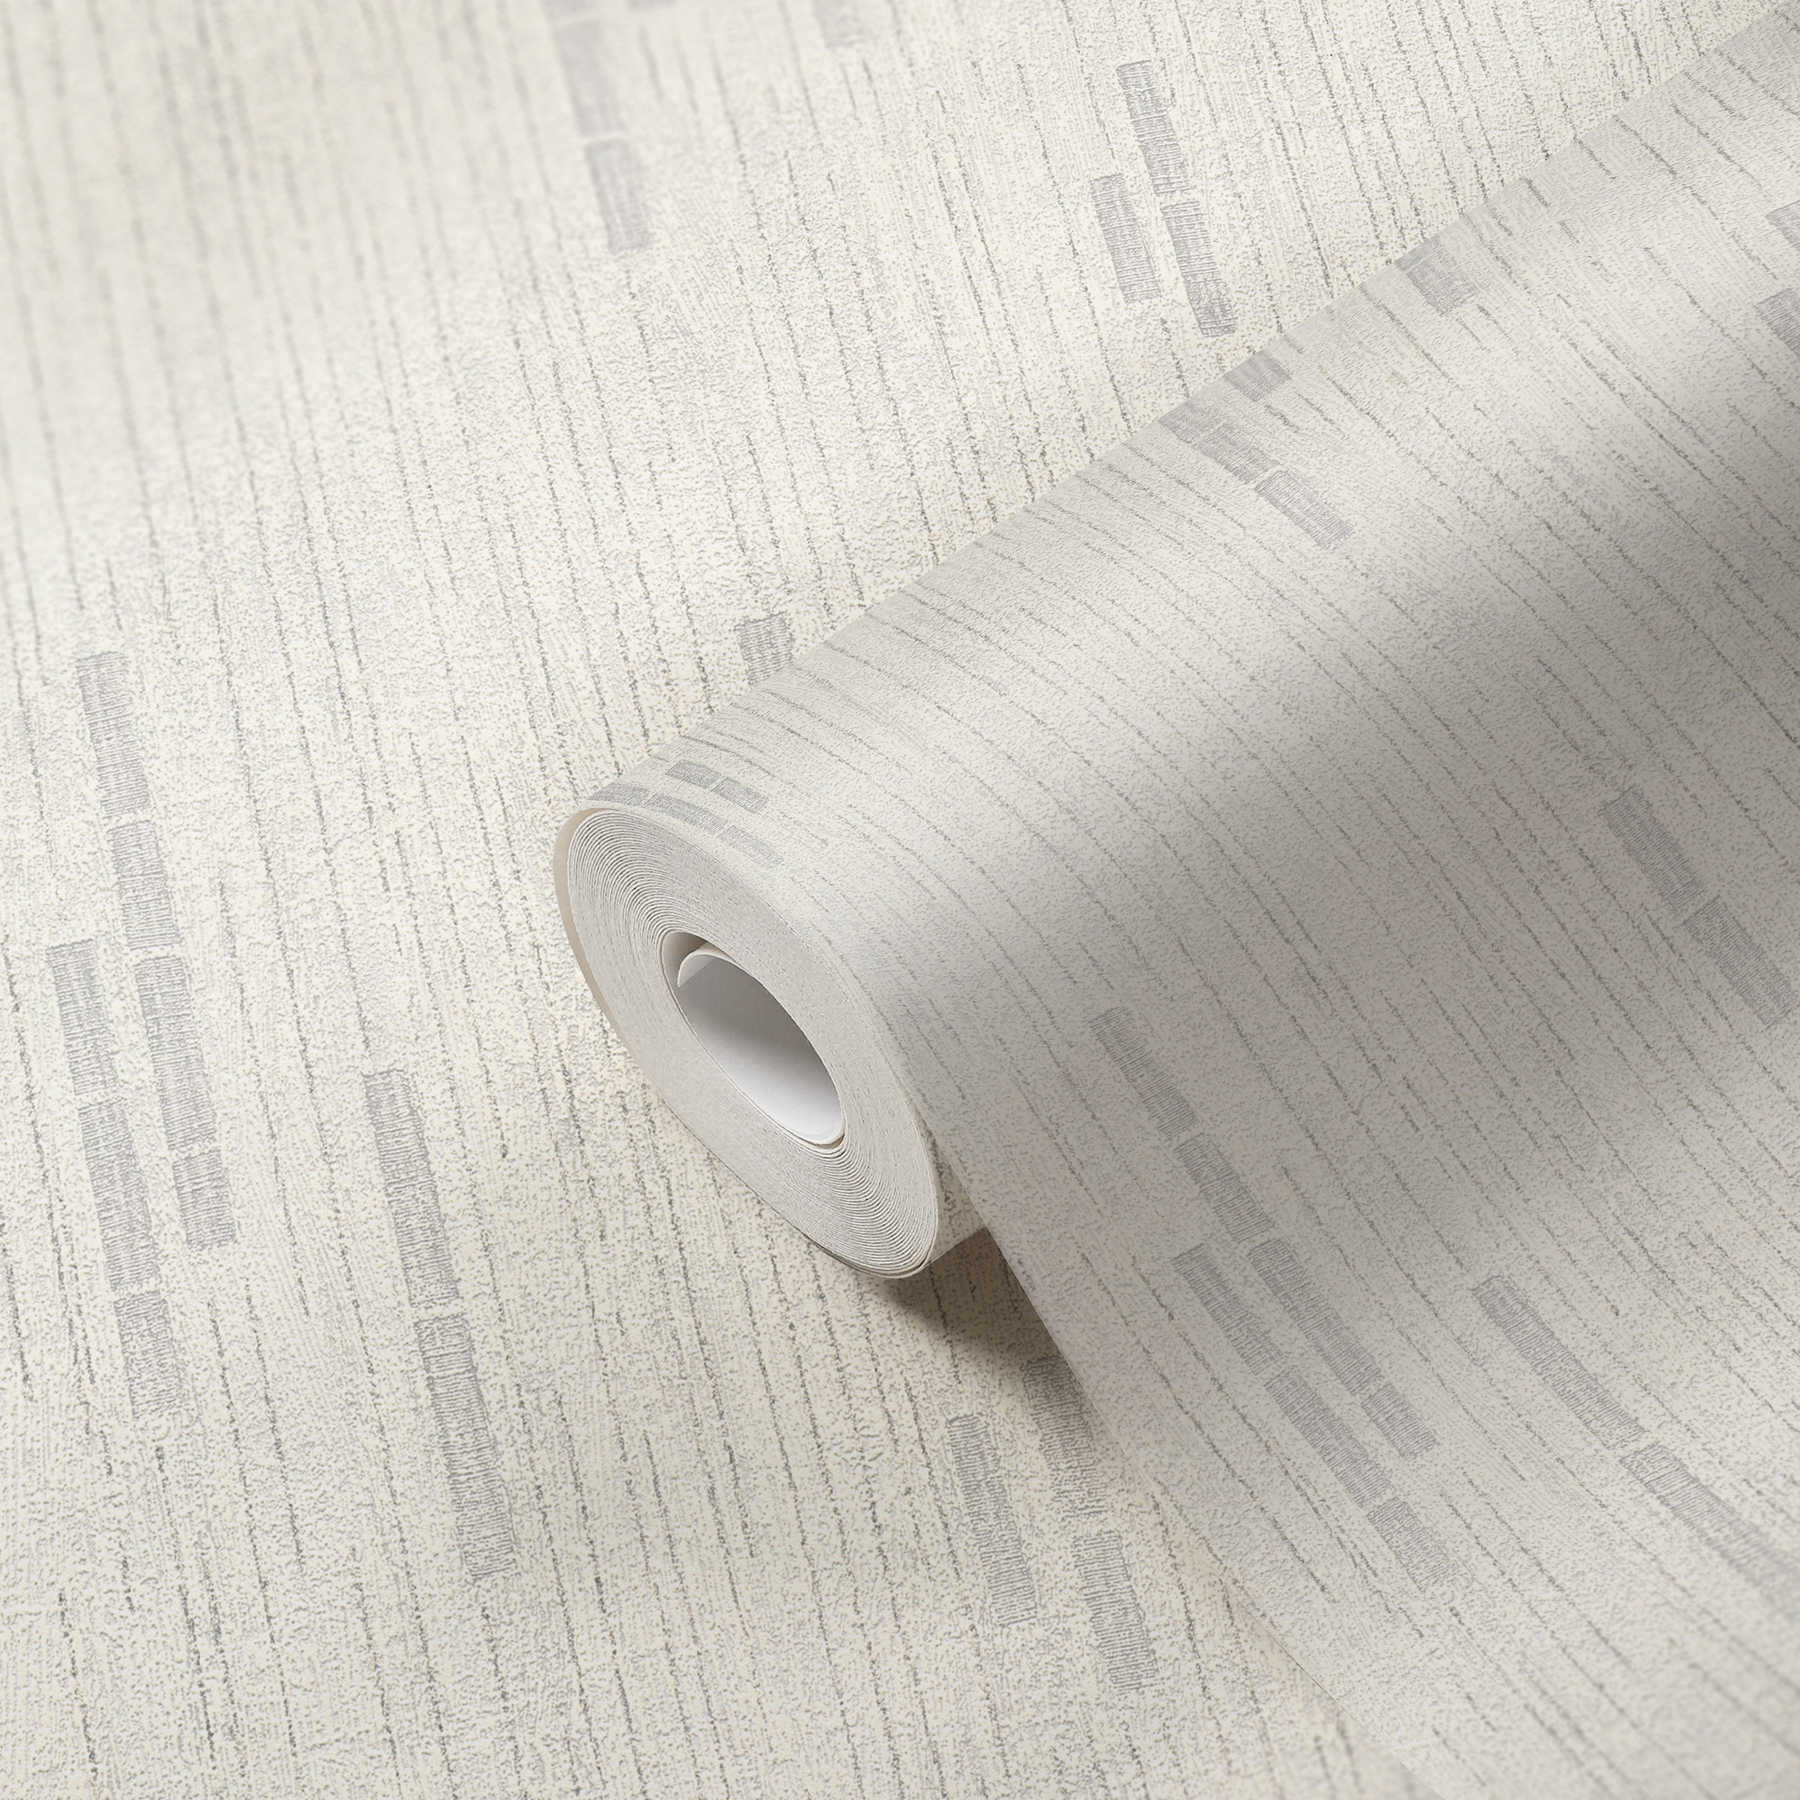             Papier peint rétro avec intissé structuré et design discret - gris, métallique, blanc
        